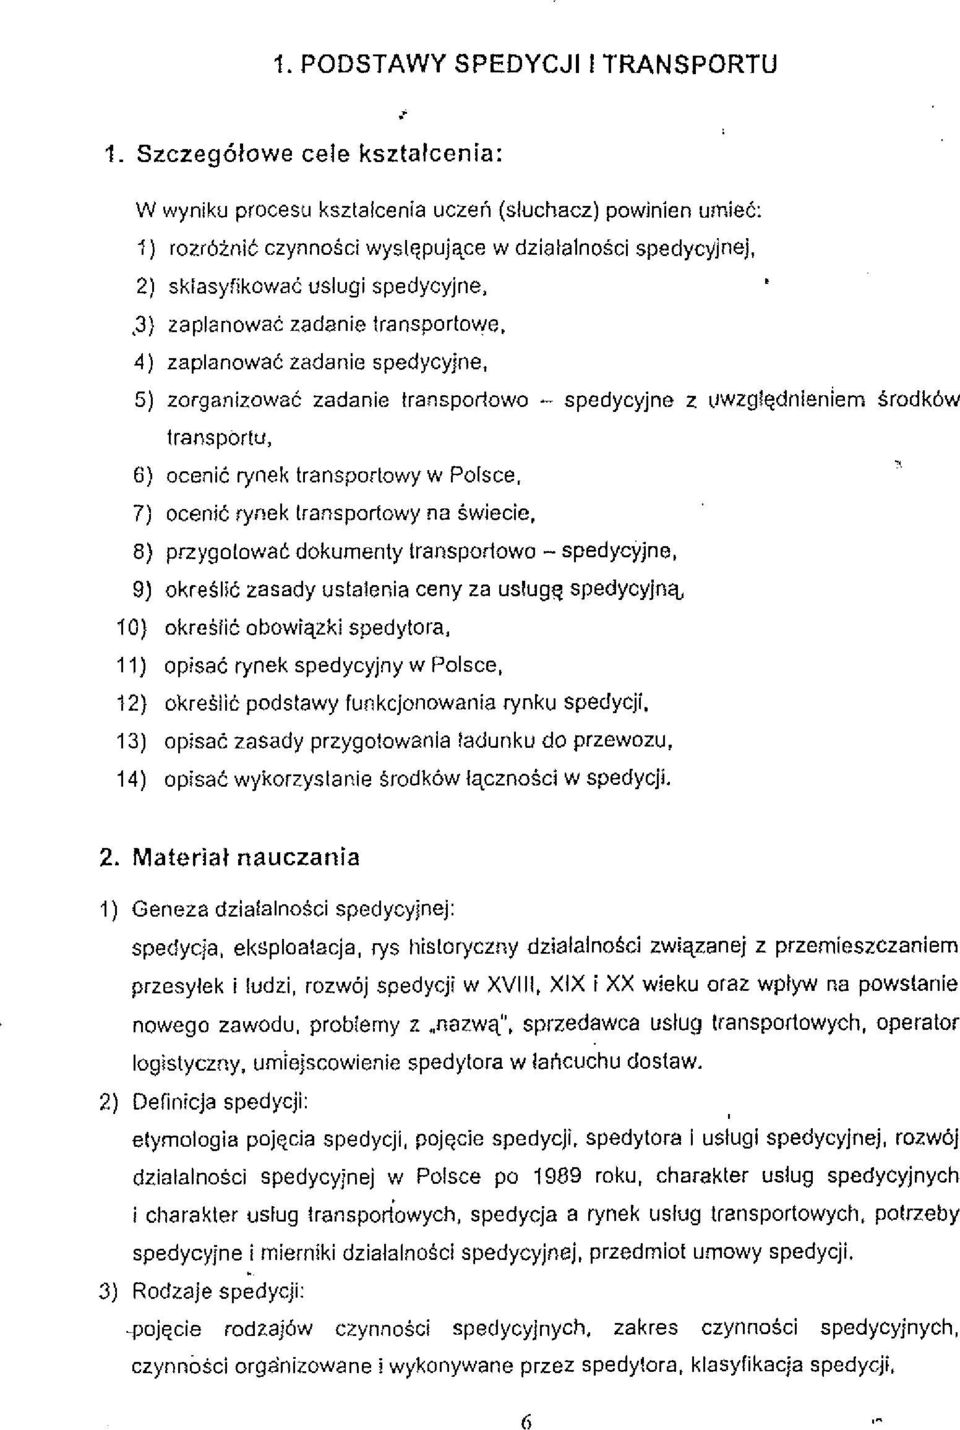 5) zorganizowac zadanie transporlowo - spedycyjne z irwzglgdnieniem srodk6w lransportu, 6) ocenic rynek transporlowy w Polsce. 7) ocenic rynek lransporlowy na Swiecie.